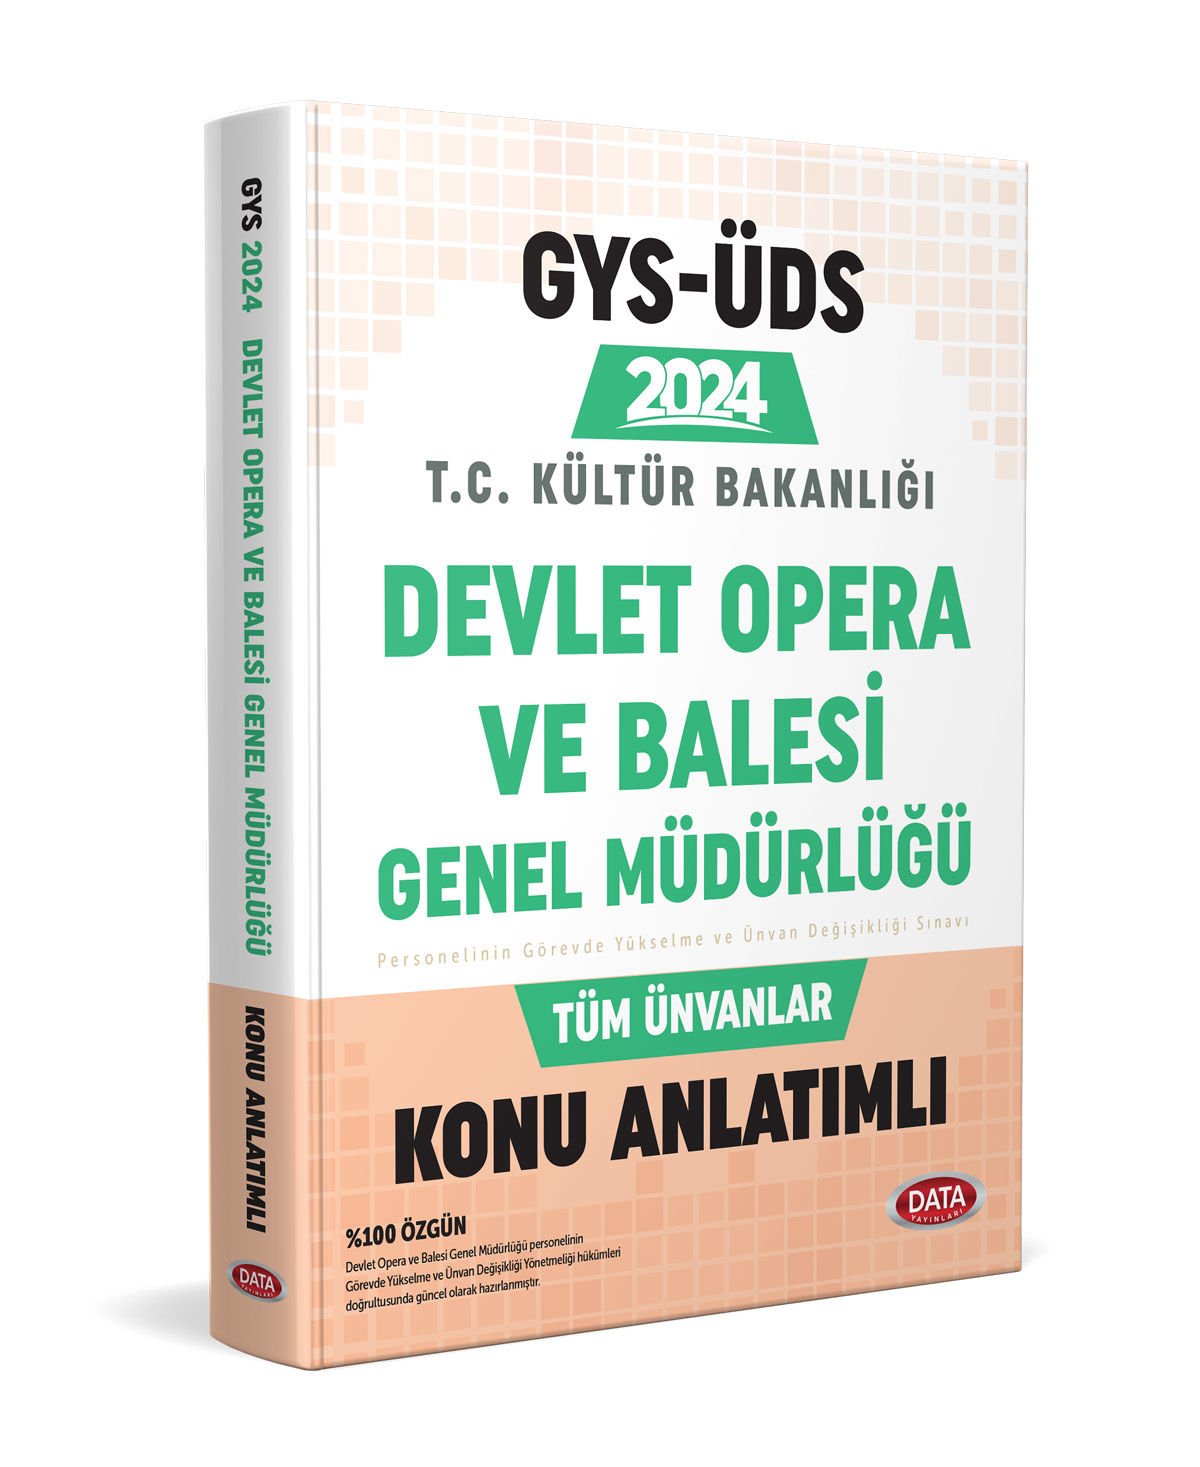 Devlet Opera Ve Bale Genel Müdürlüğü GYS-ÜDS Konu Anlatımlı